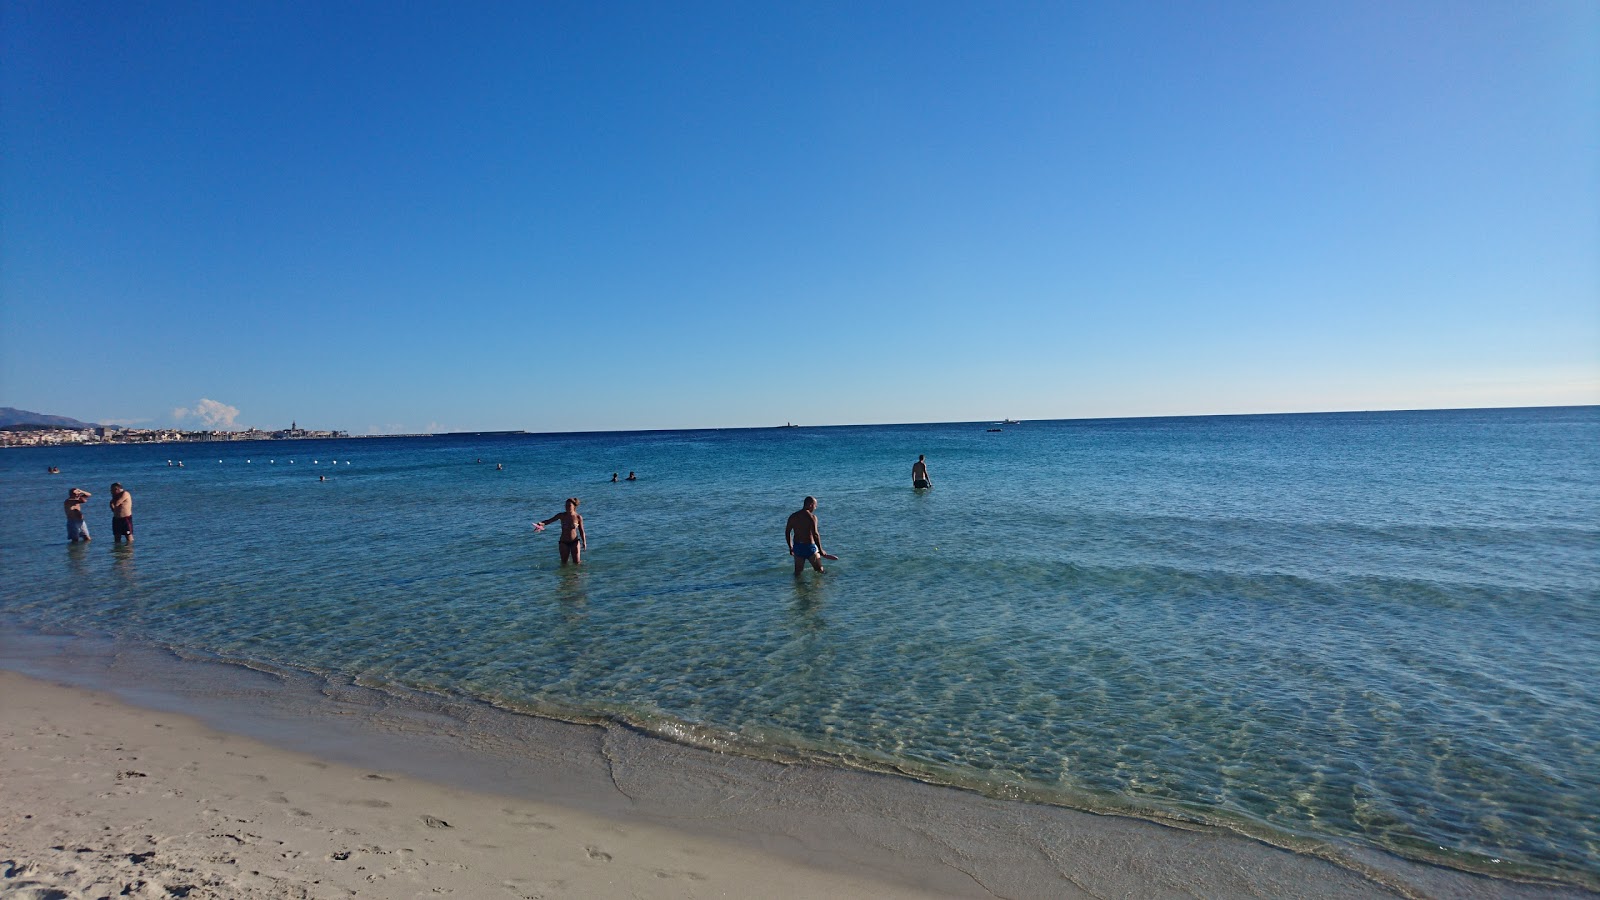 Foto de Praia Maria Pia - recomendado para viajantes em família com crianças